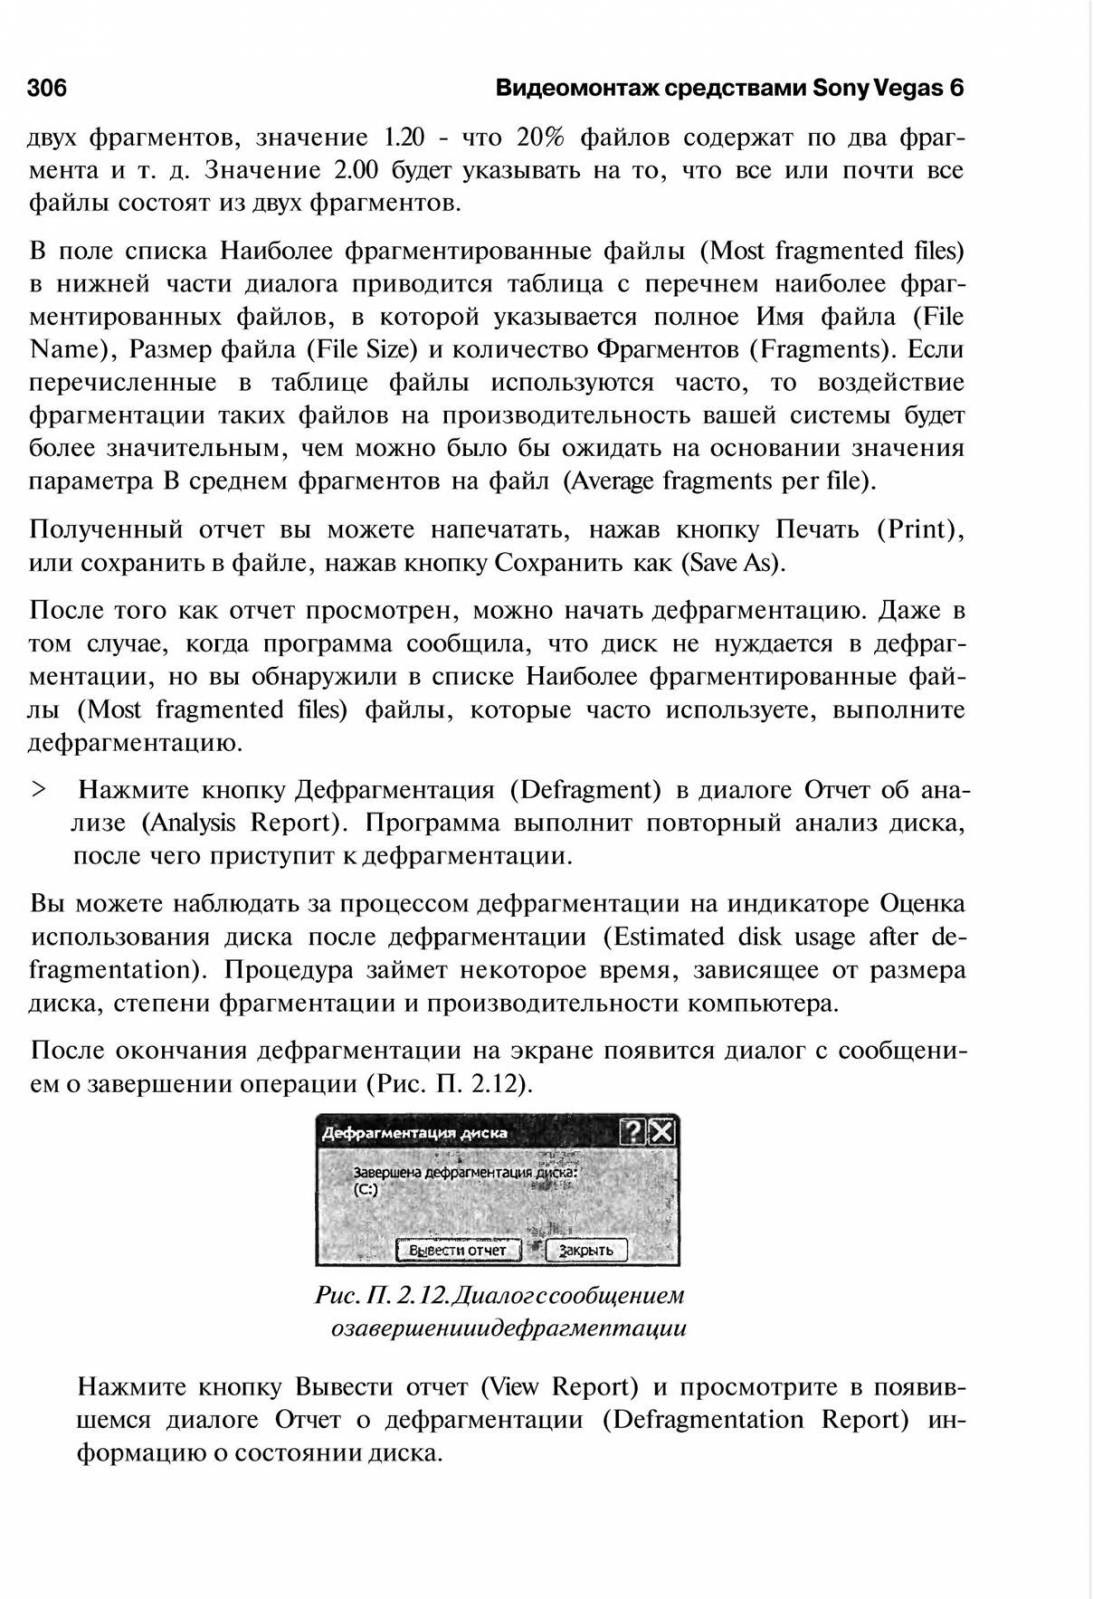 http://redaktori-uroki.3dn.ru/_ph/14/27010175.jpg